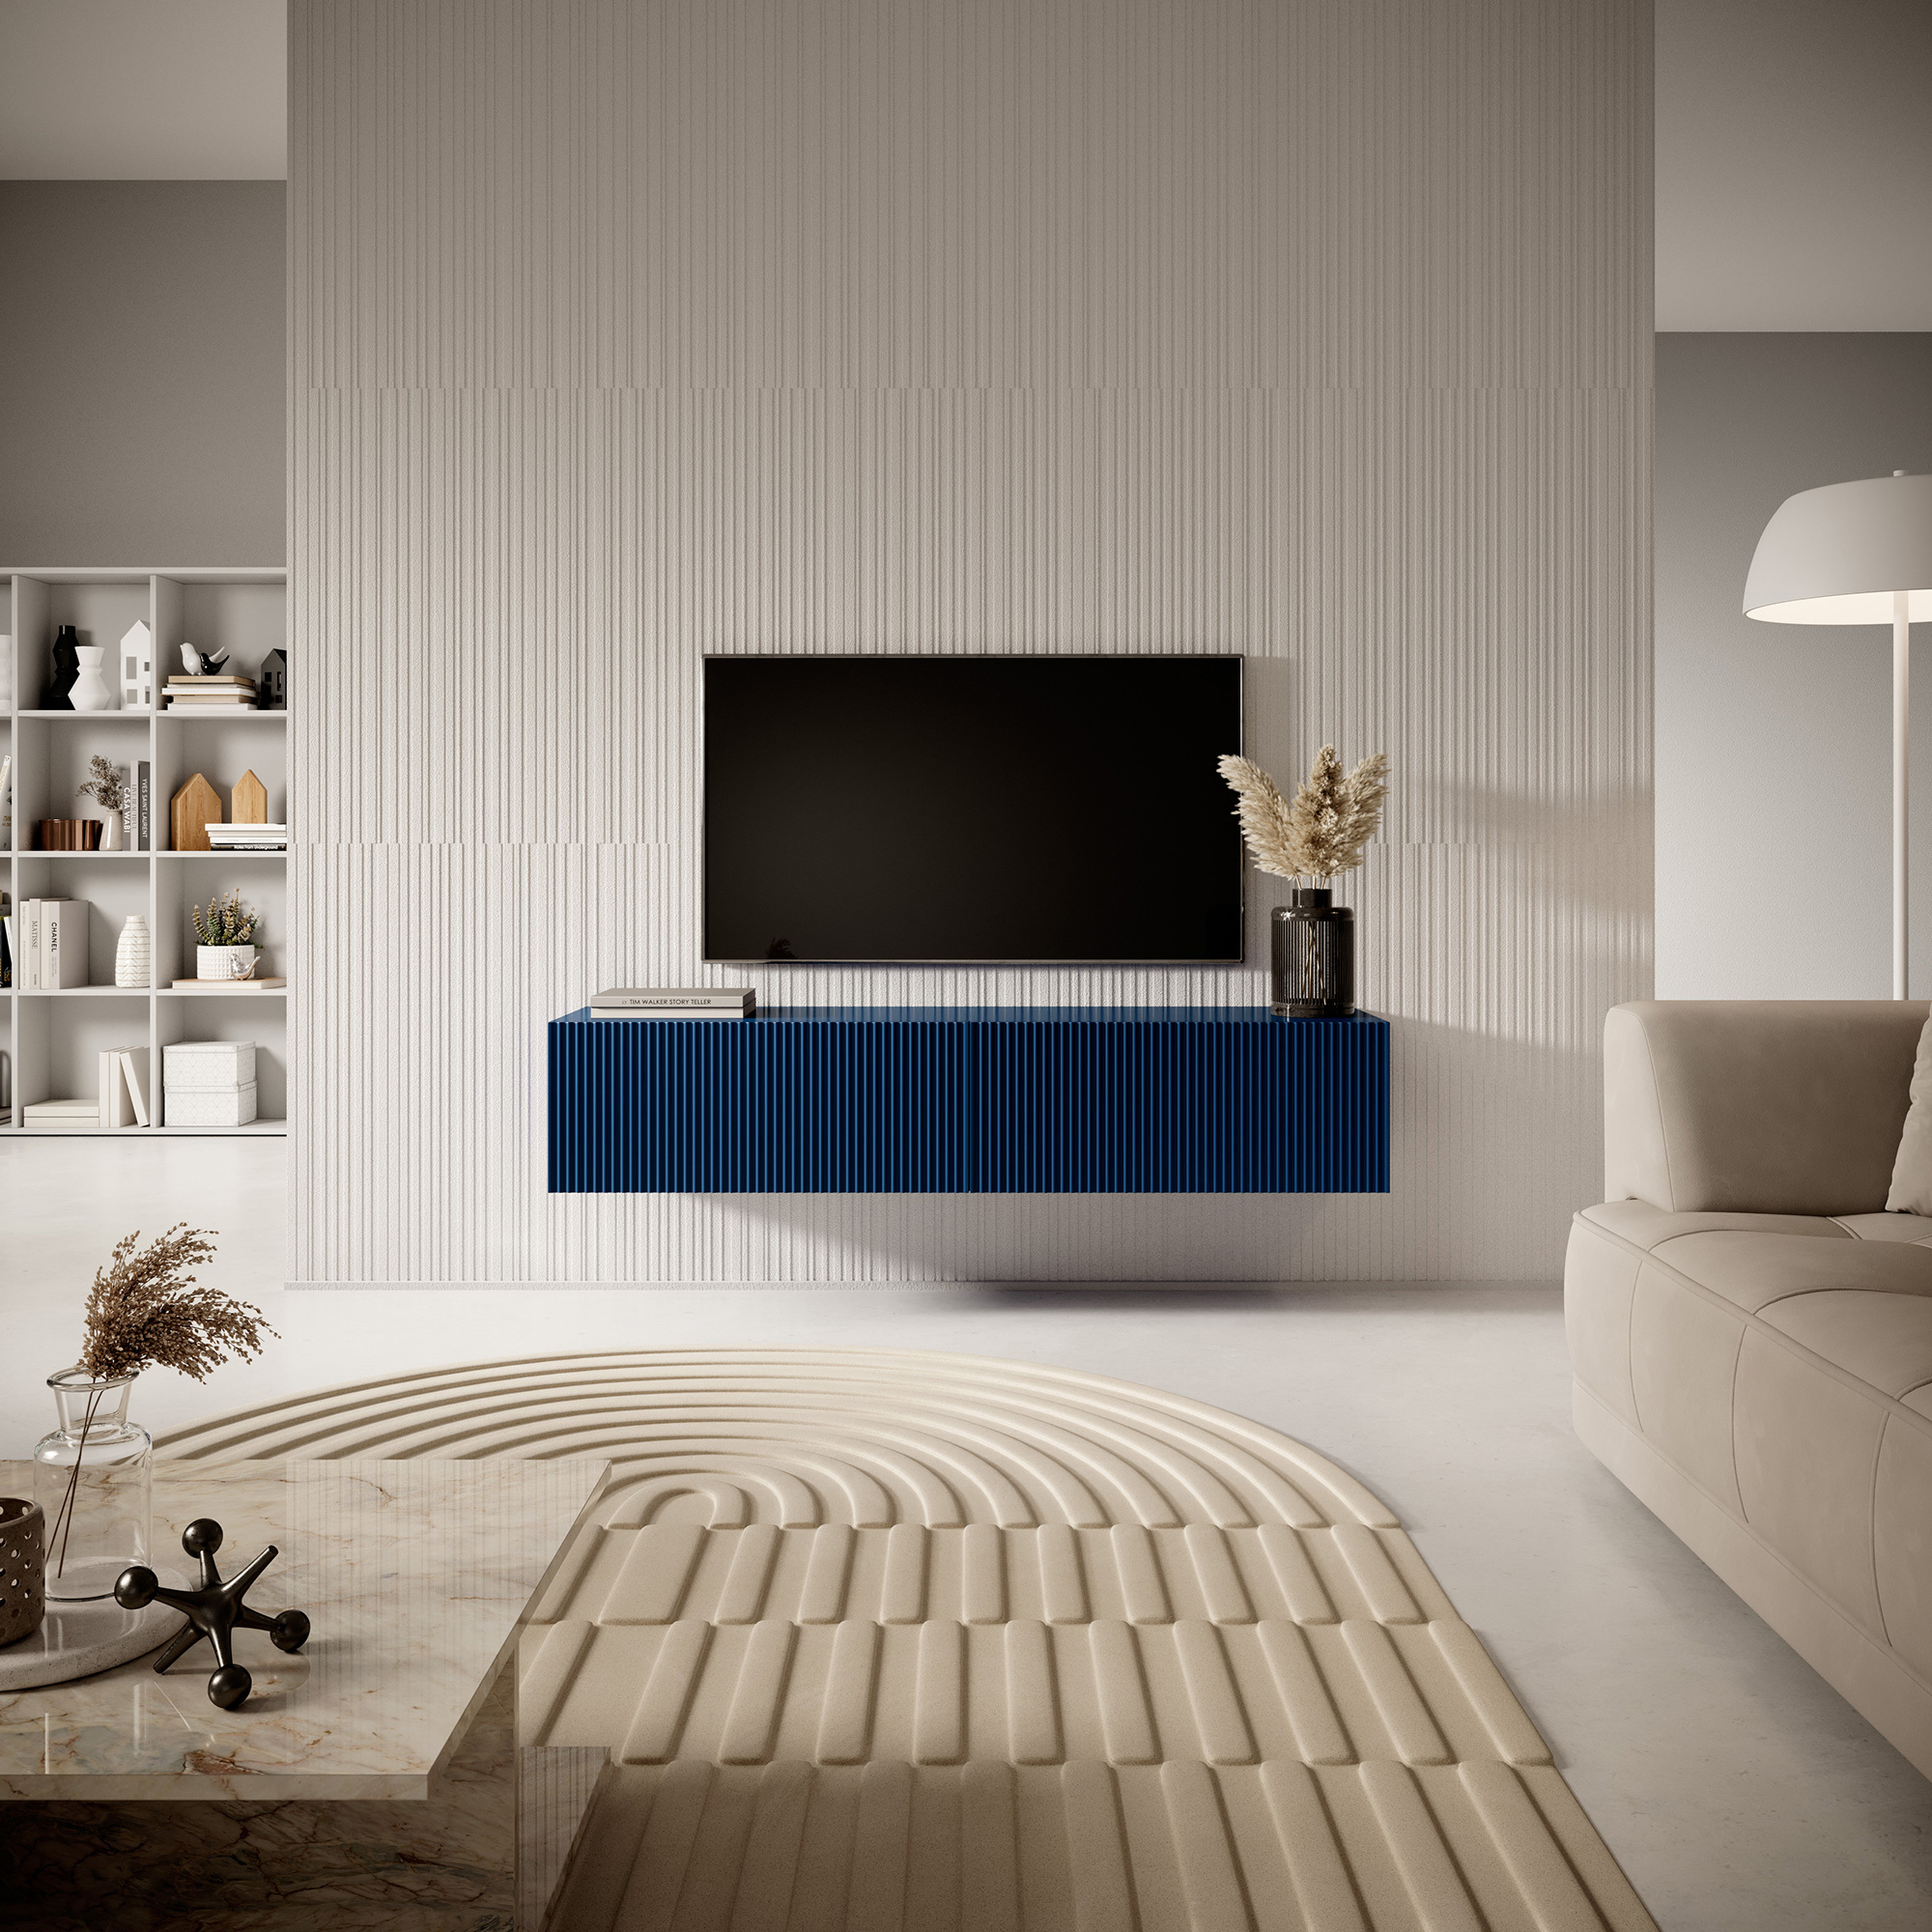 VELDIO Meuble TV 140 cm bleu marine avec façade fraisée